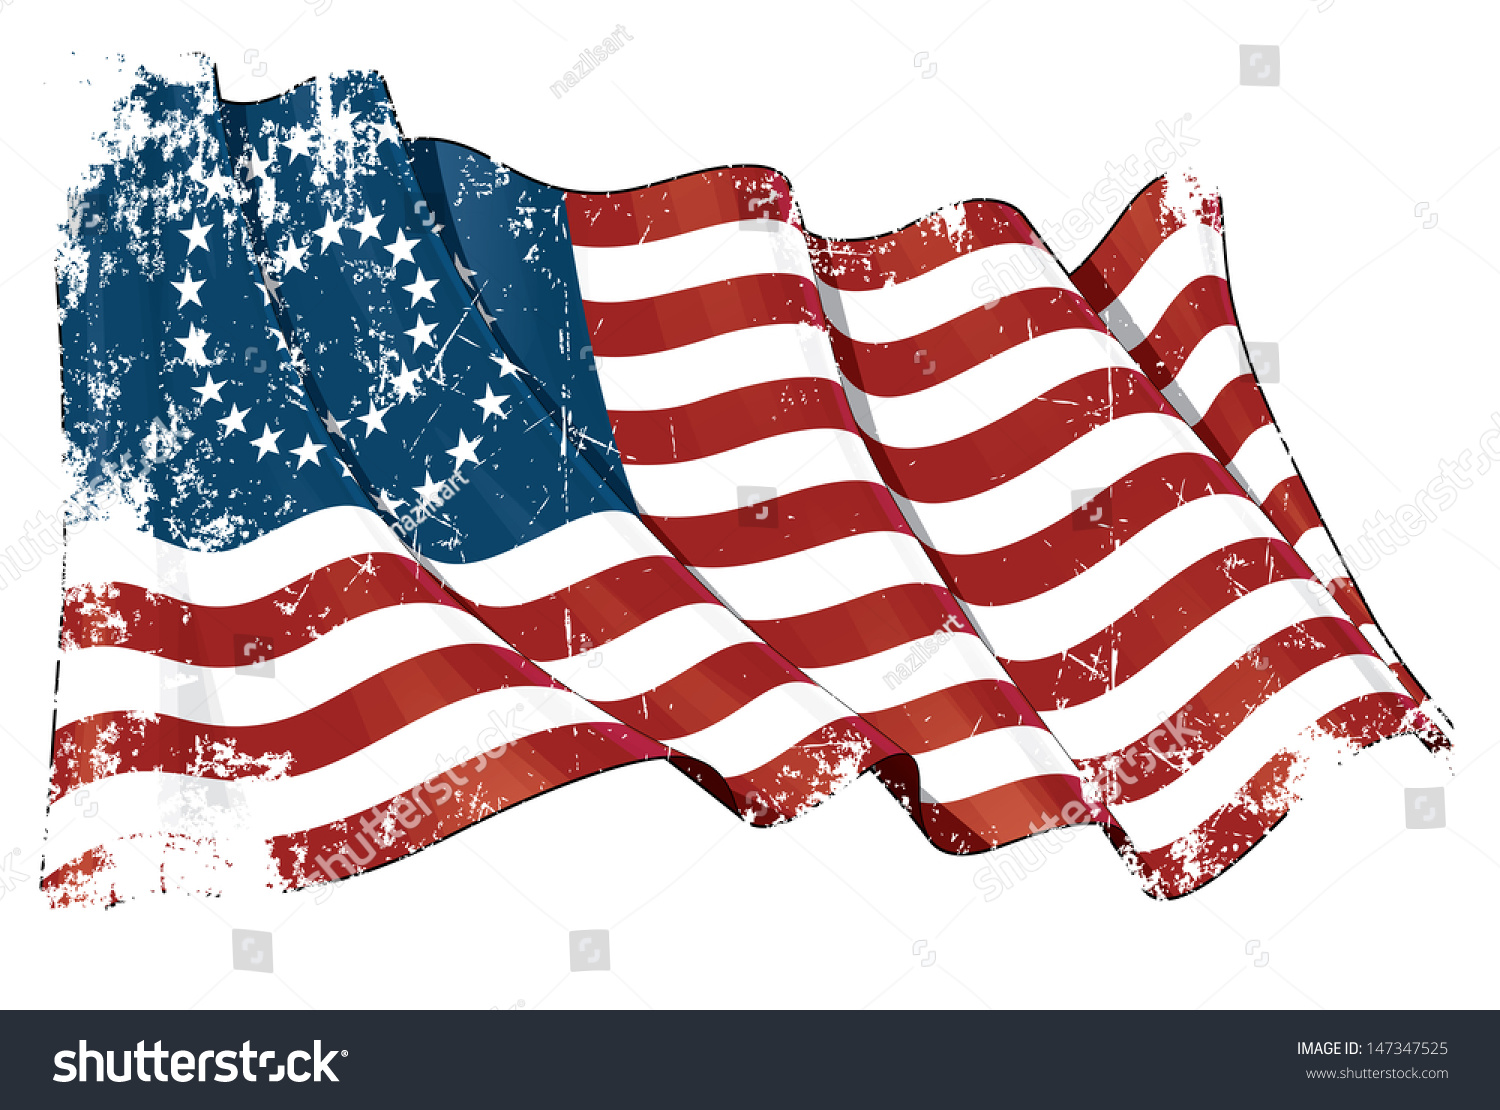 civil war flags clipart - photo #33